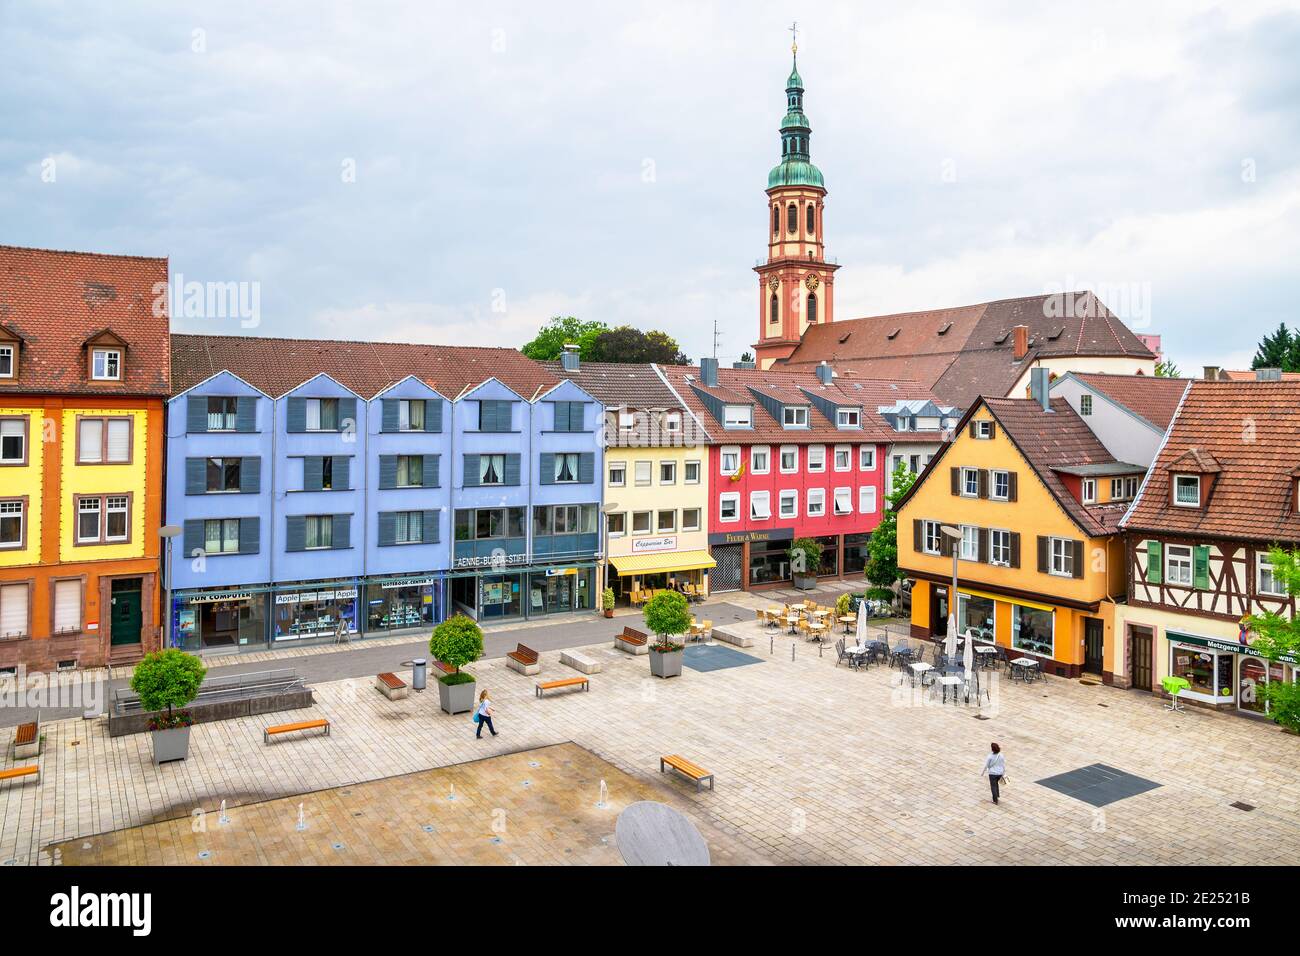 Vue sur la nouvelle place du marché (Neuer Marktplatz) entourée de maisons anciennes traditionnelles. Offenburg, Allemagne Banque D'Images